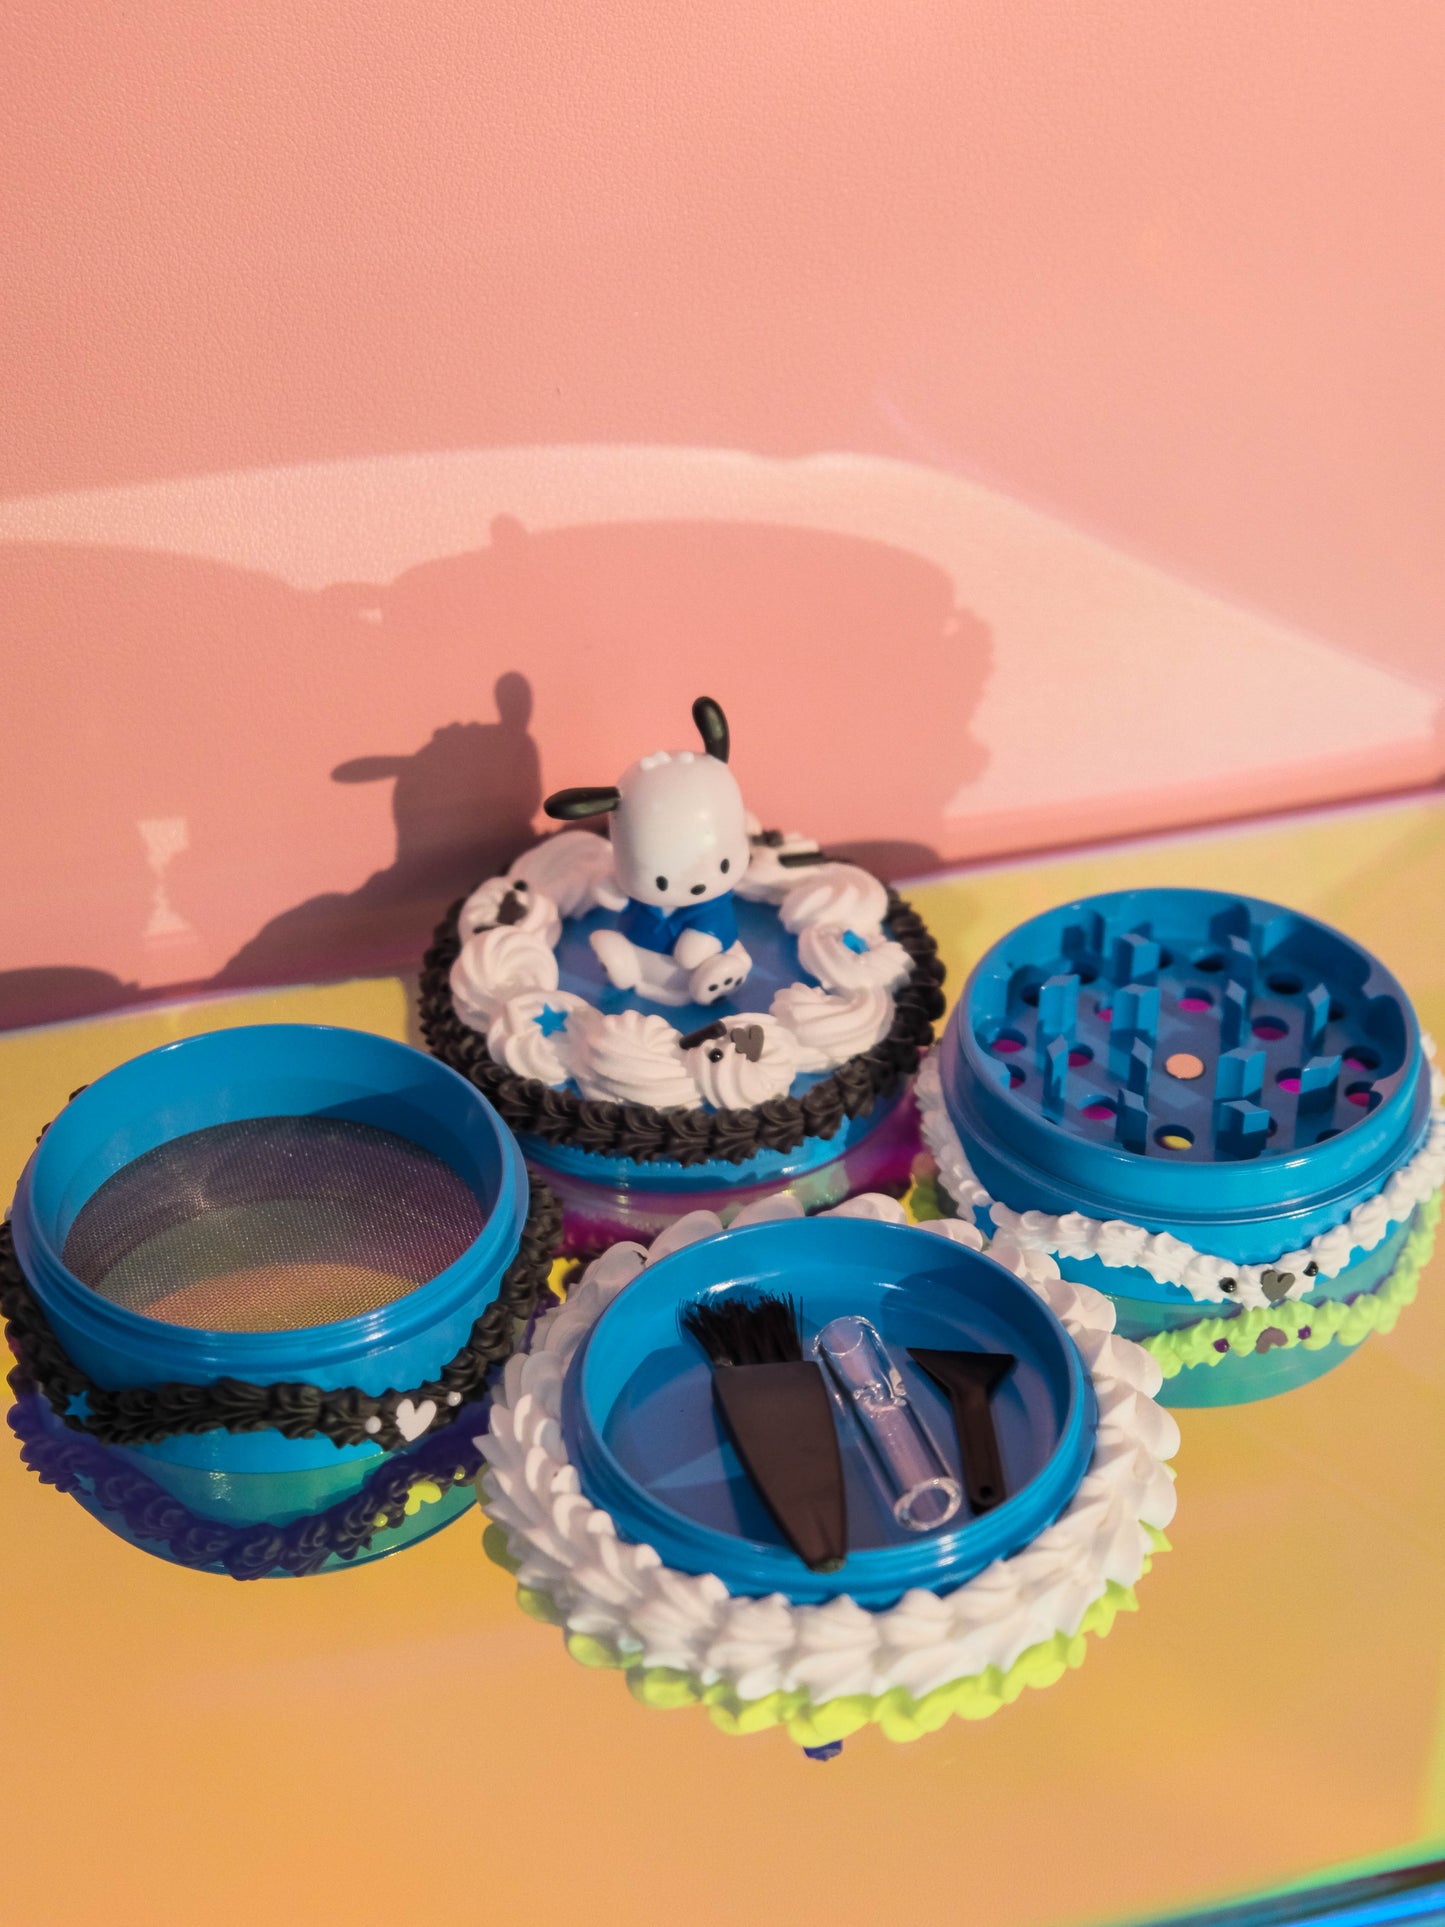 Pochacco en Blue Cake - Grinder